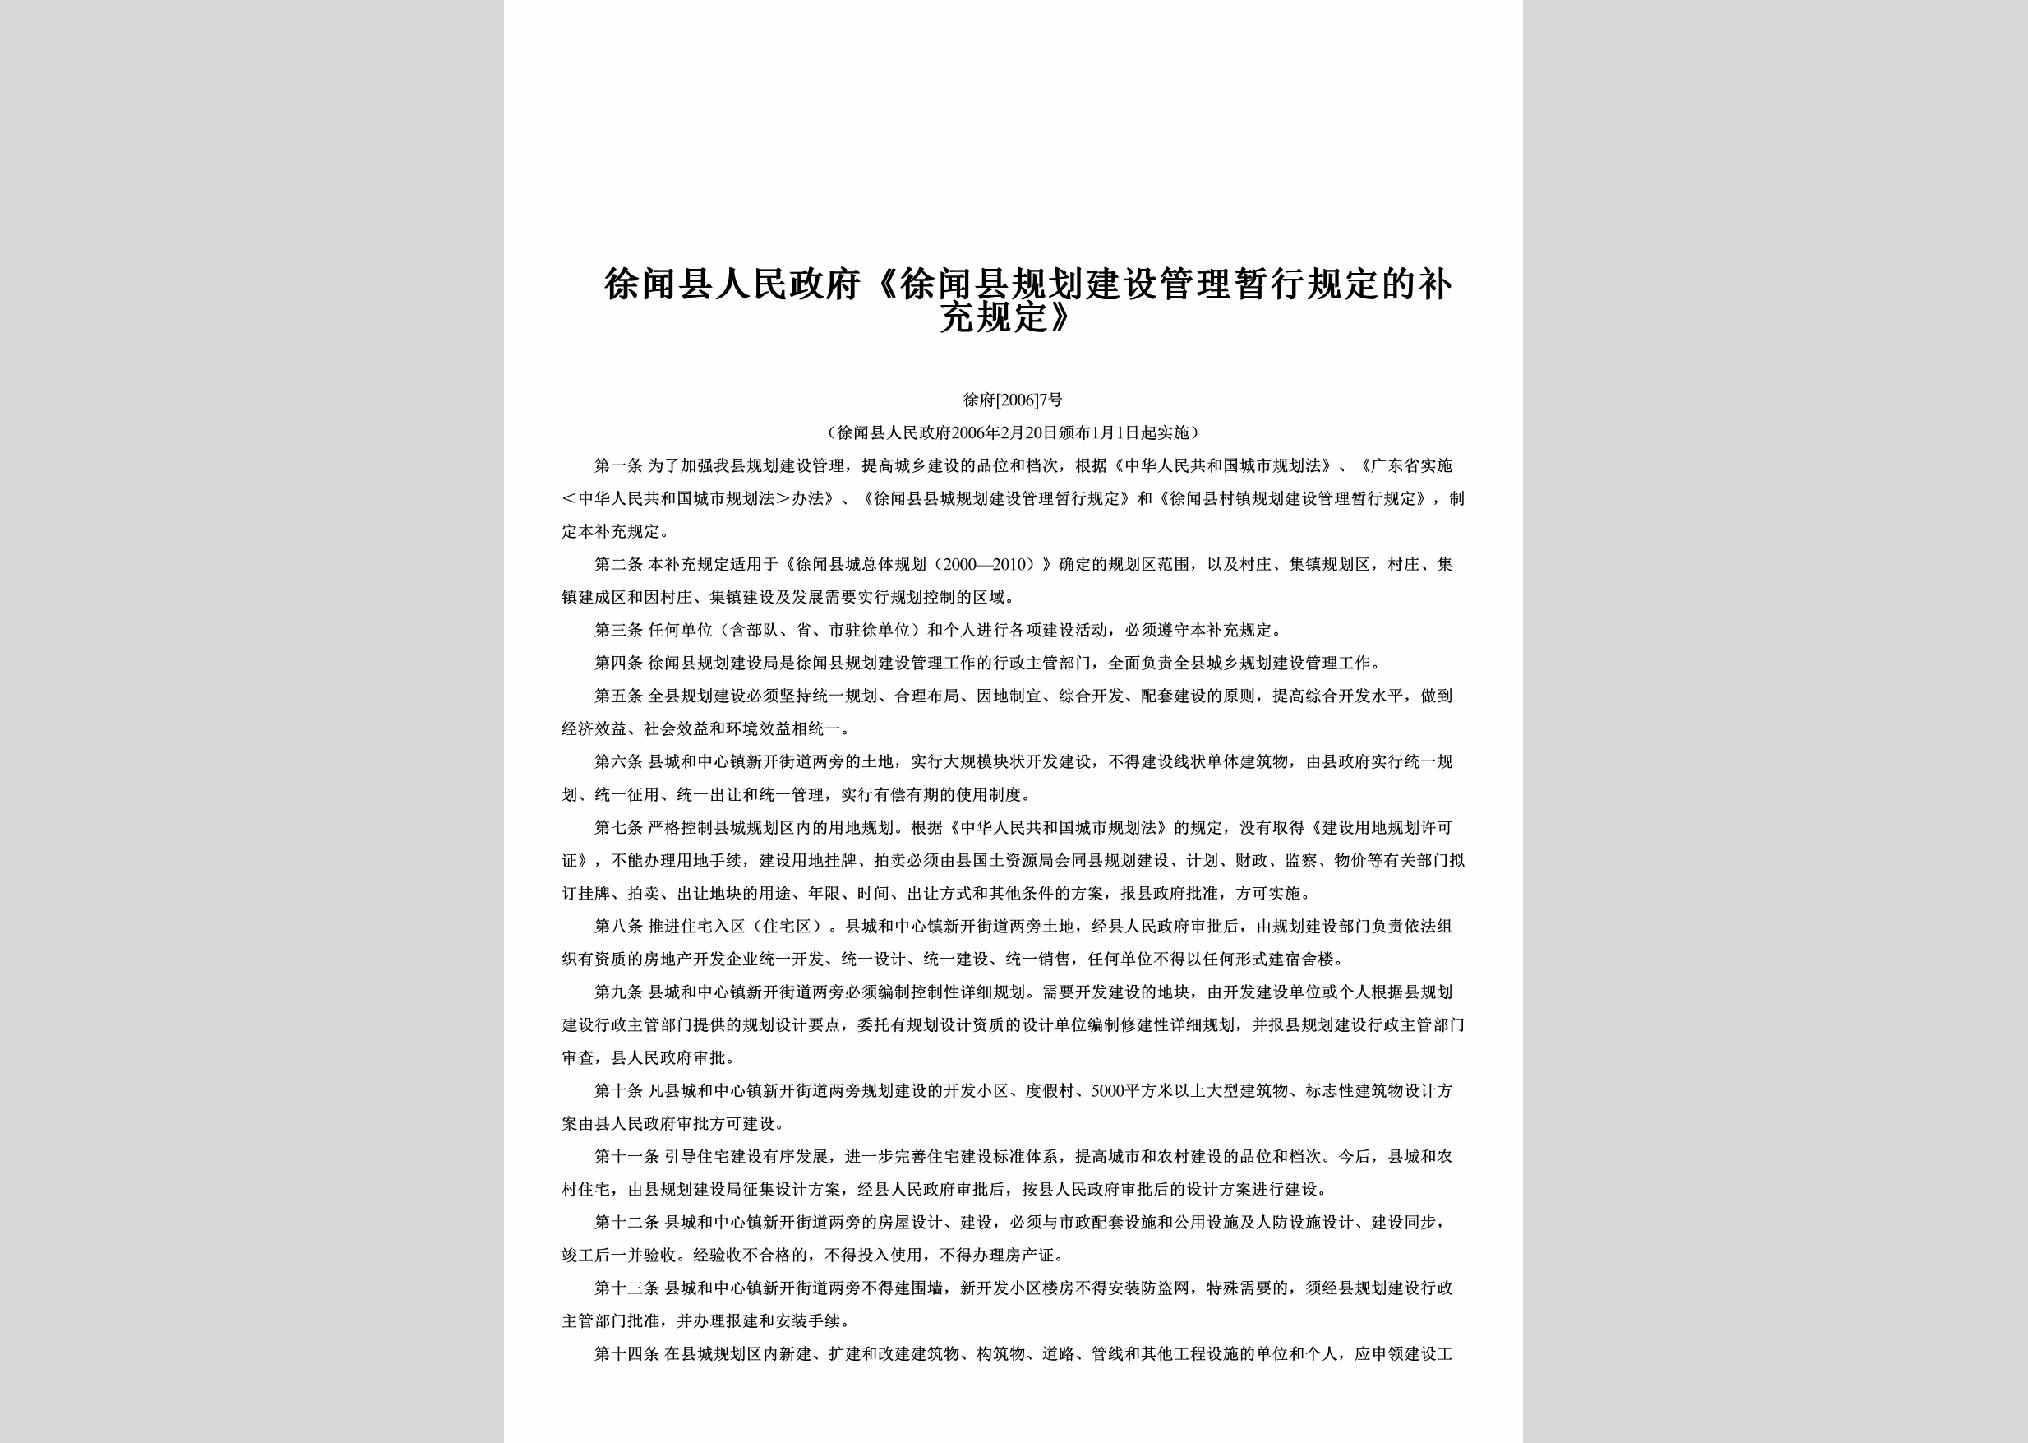 徐府[2006]7号：《徐闻县规划建设管理暂行规定的补充规定》